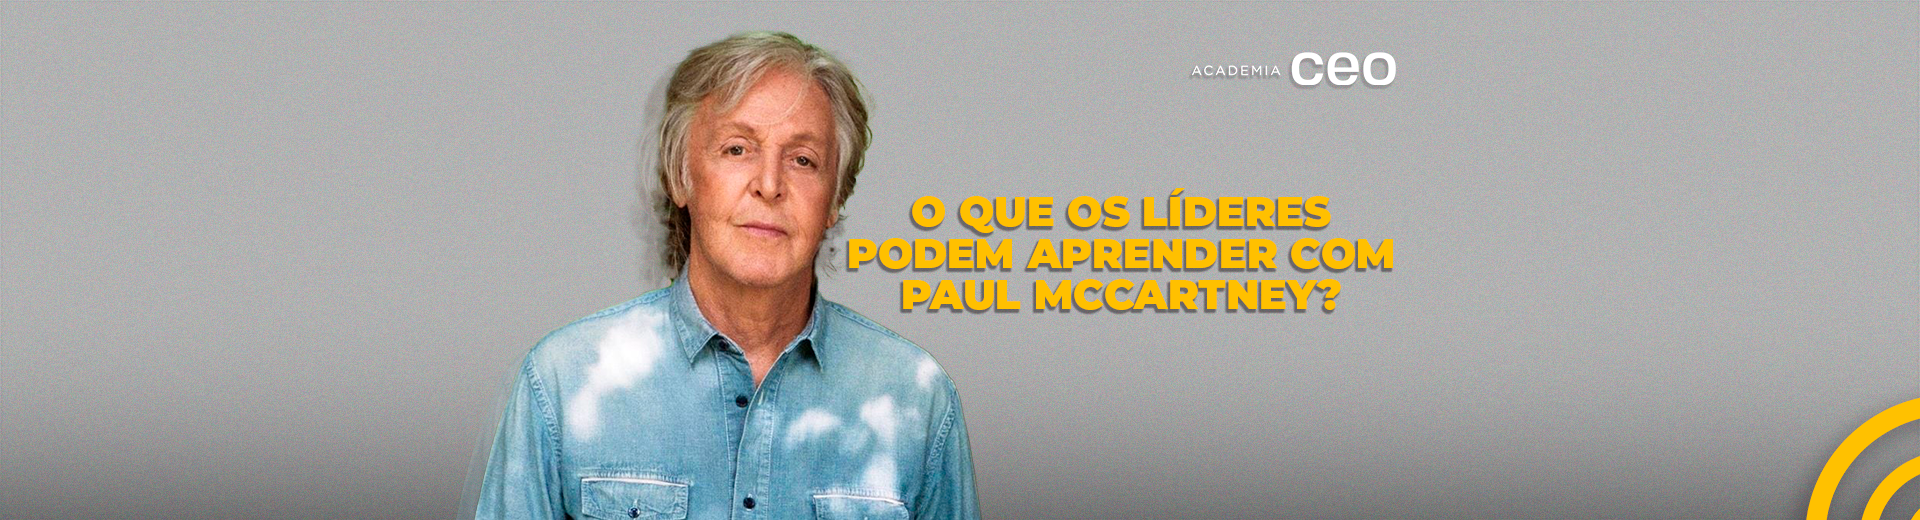 Fãs de Paul McCartney se preparam para a temporada de shows no Brasil